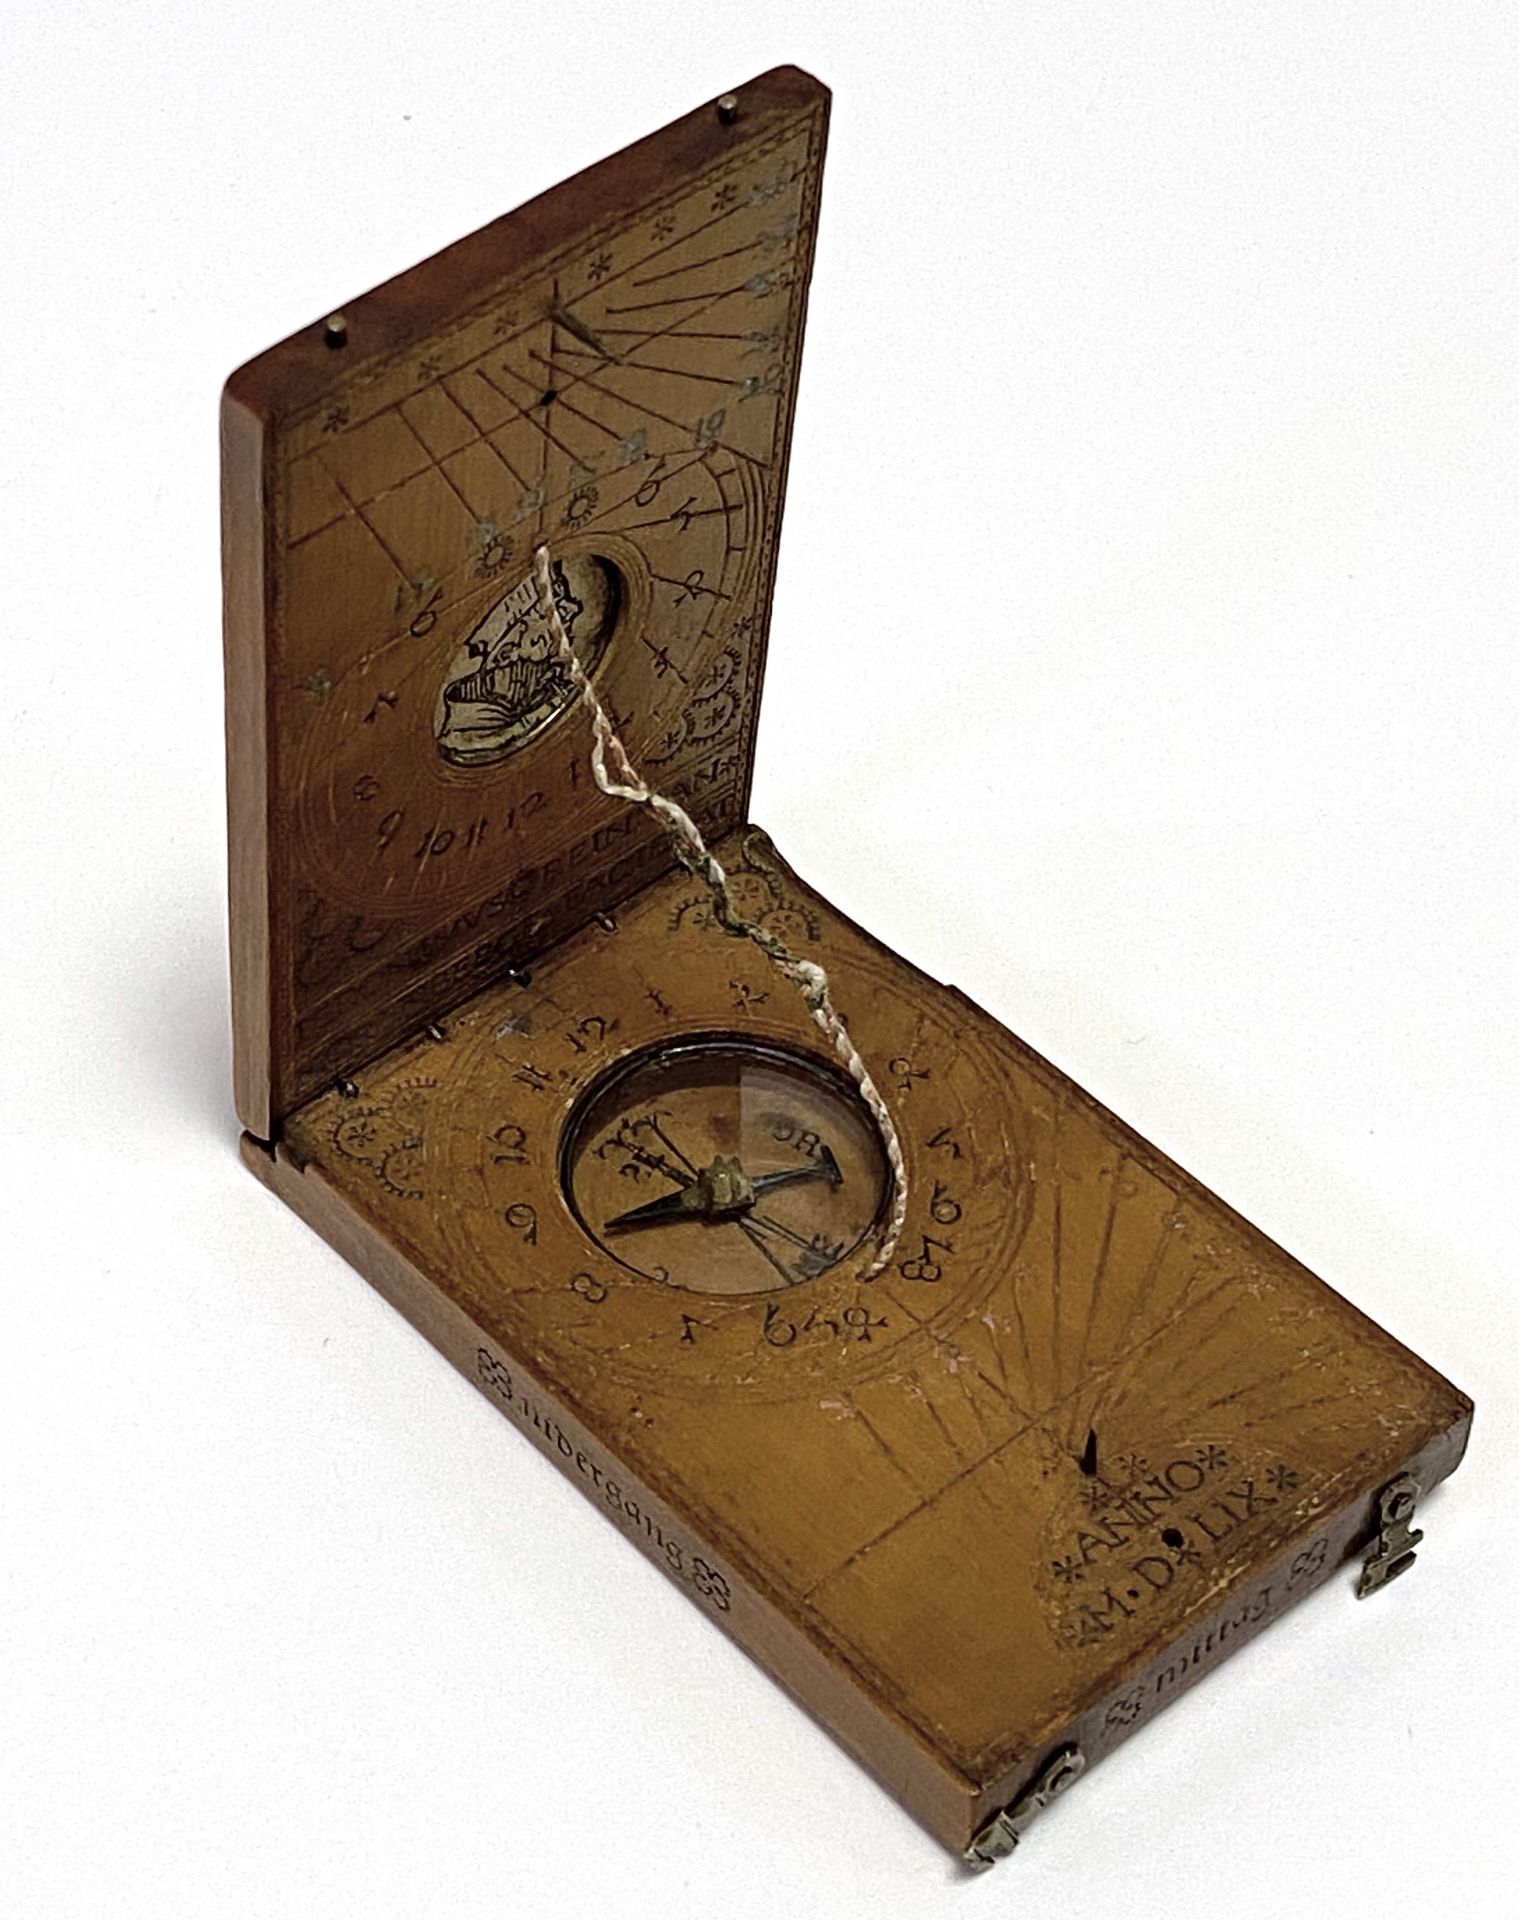 Museale Klapp - Sonnenuhr mit Kompass von Hieronymus Reimann / Nürnberg 1559